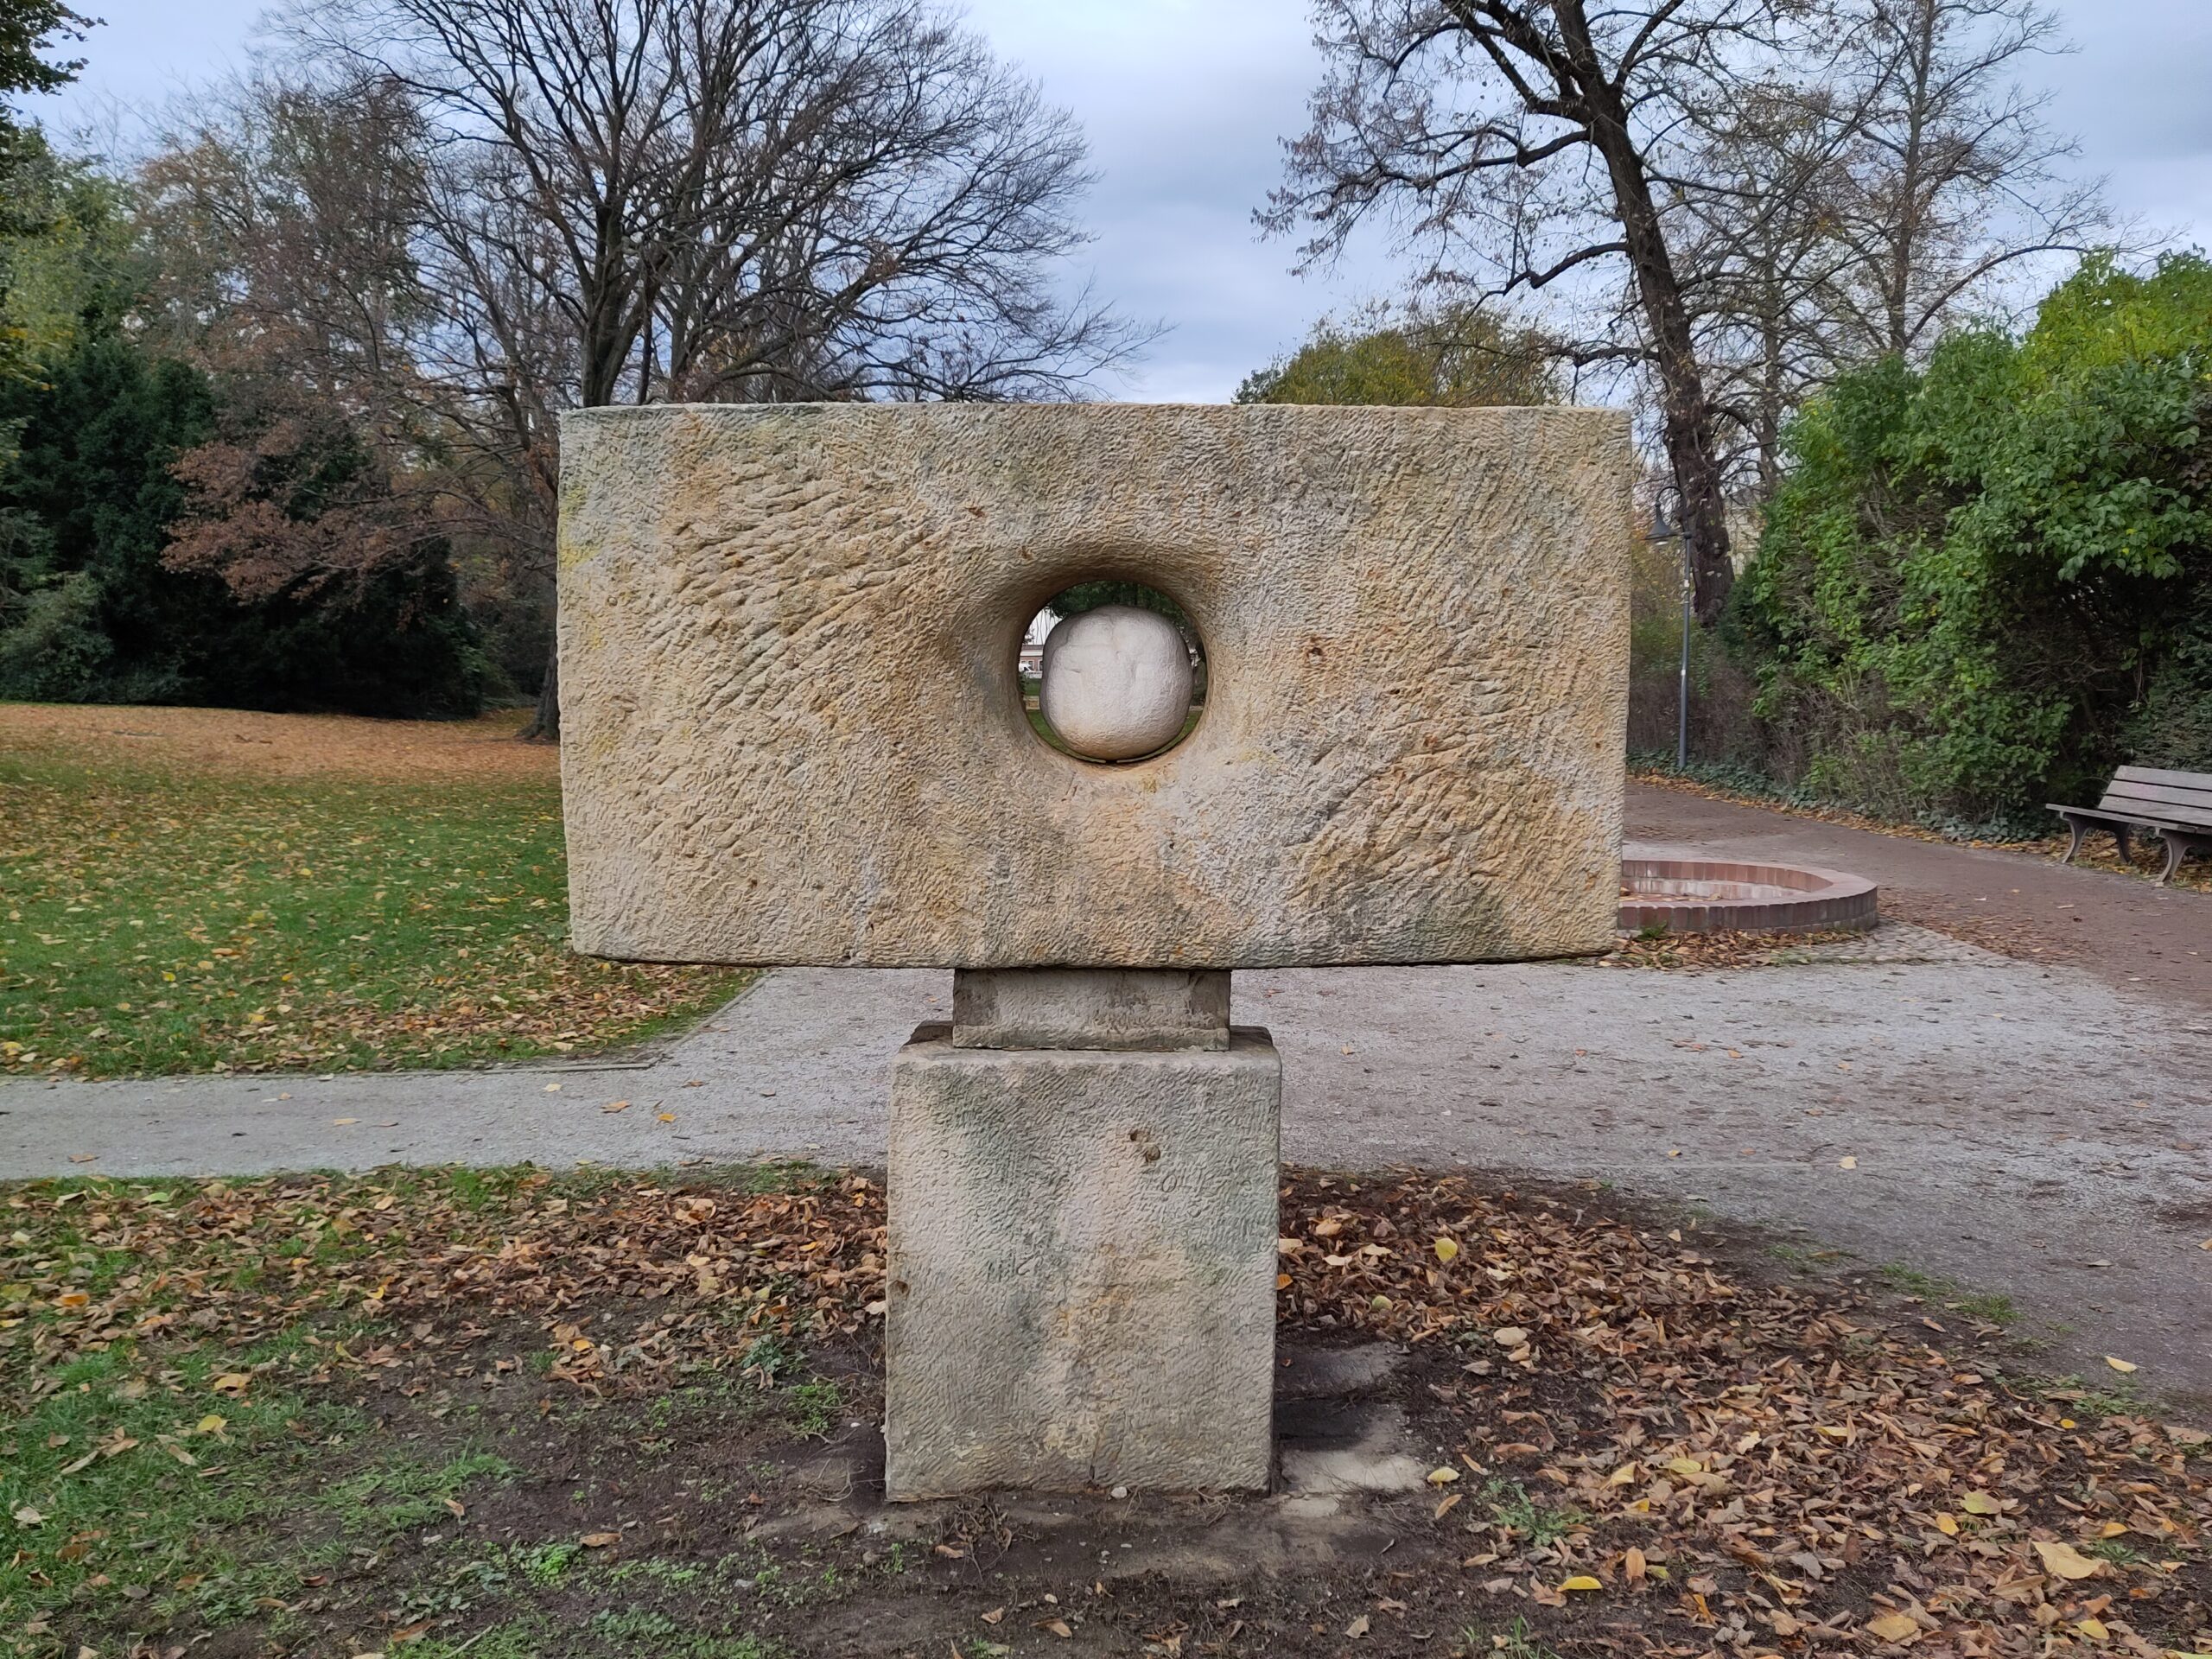 Zu sehen ist der Puschkinpark in Cottbus. Im Vordergrund steht eine Skulptur.